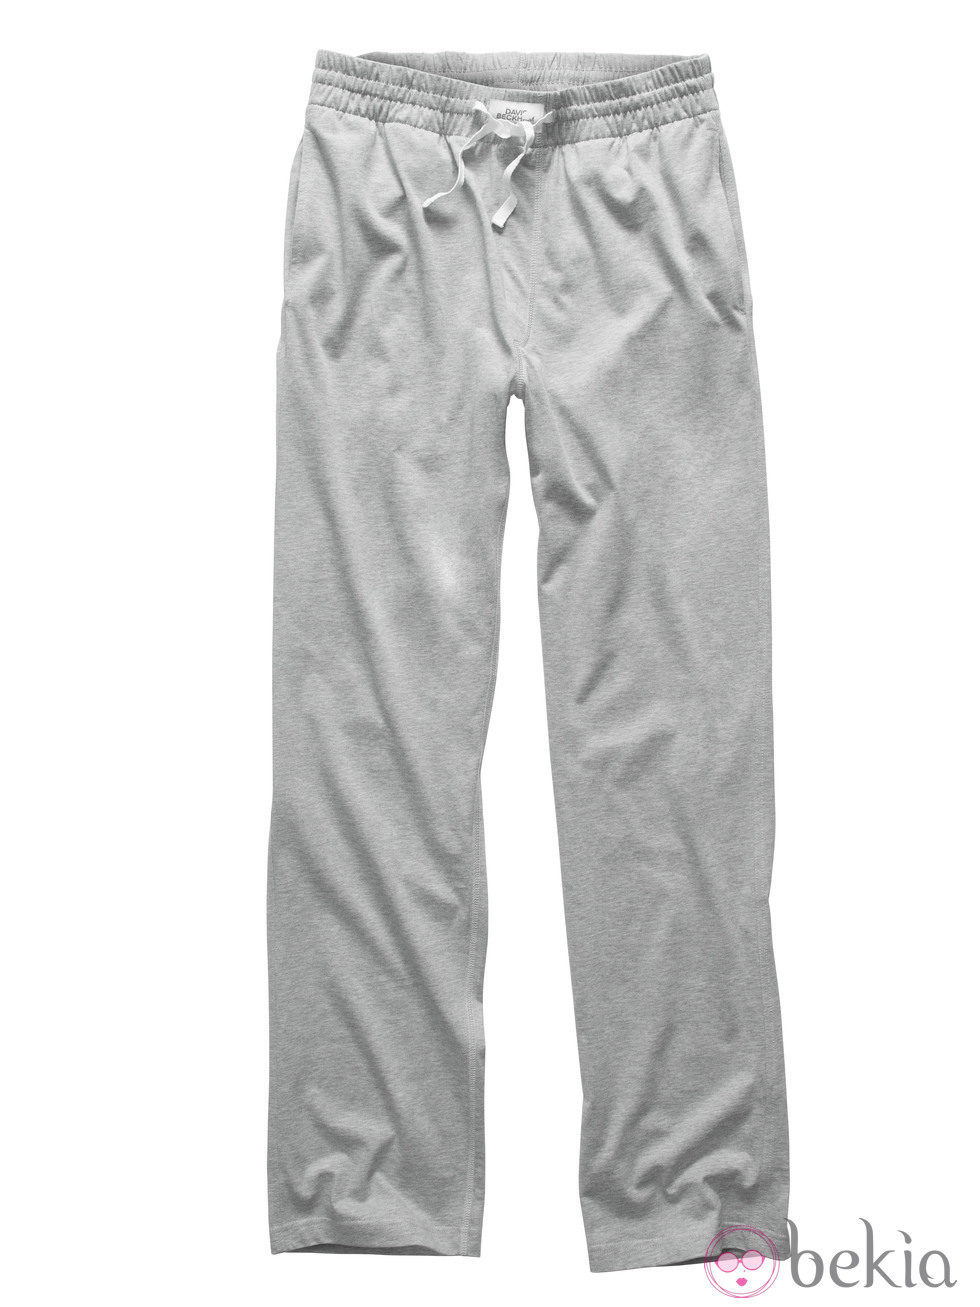 Pantalón de pijama ancho de la colección de David Beckham para H&M